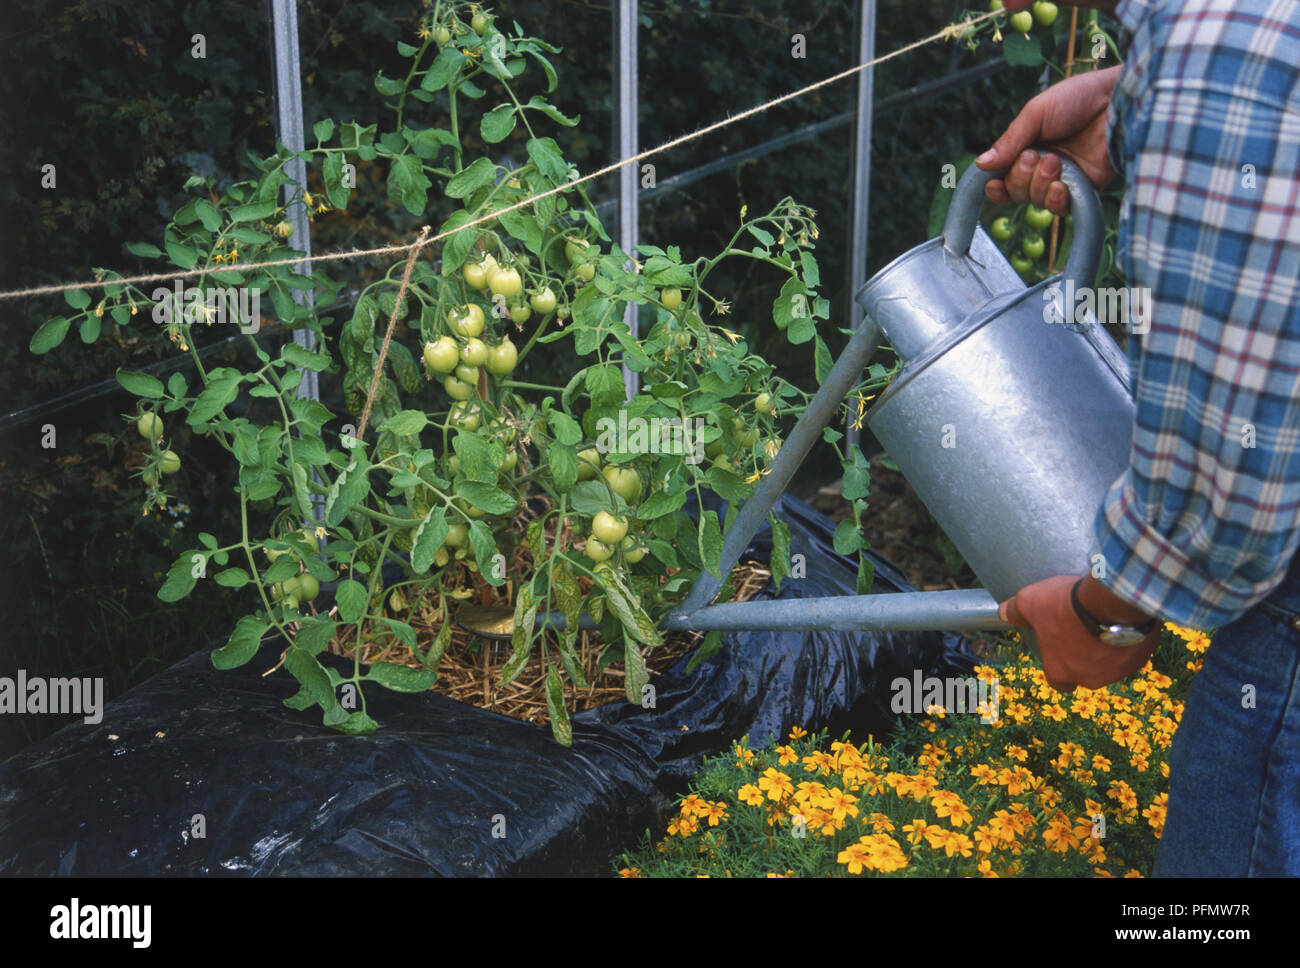 Uomo che utilizza un metallo acqua può ad acqua i pomodori che crescono in una balla di paglia contenuta in una borsa nera di plastica. La coltivazione di pomodori sono verdi e immaturo. Foto Stock